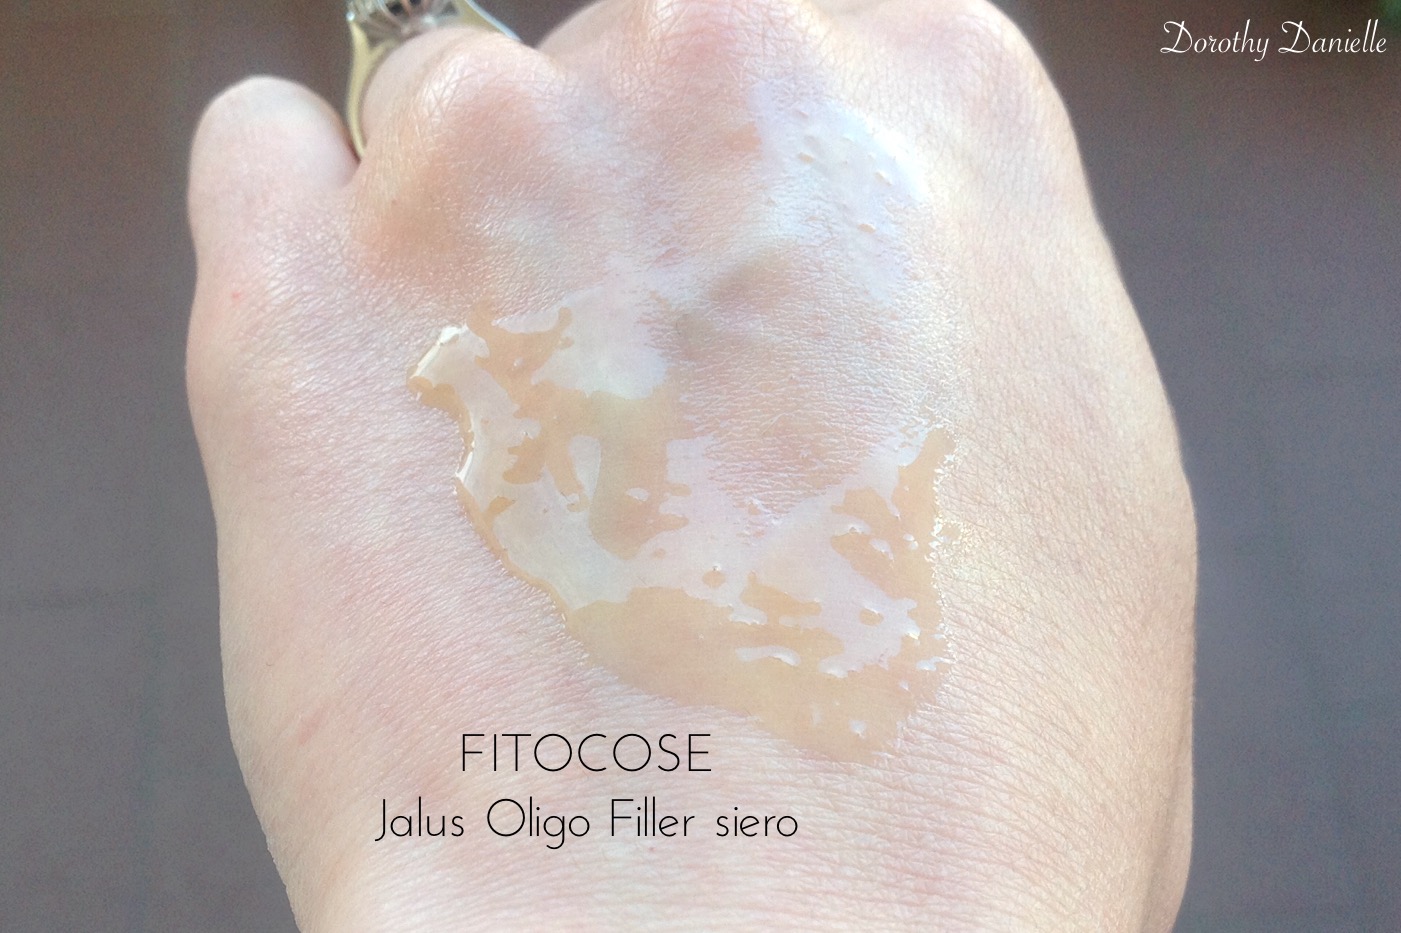 Opinione-jalus-oligo-filler-siero-fitocose-recensione-inci